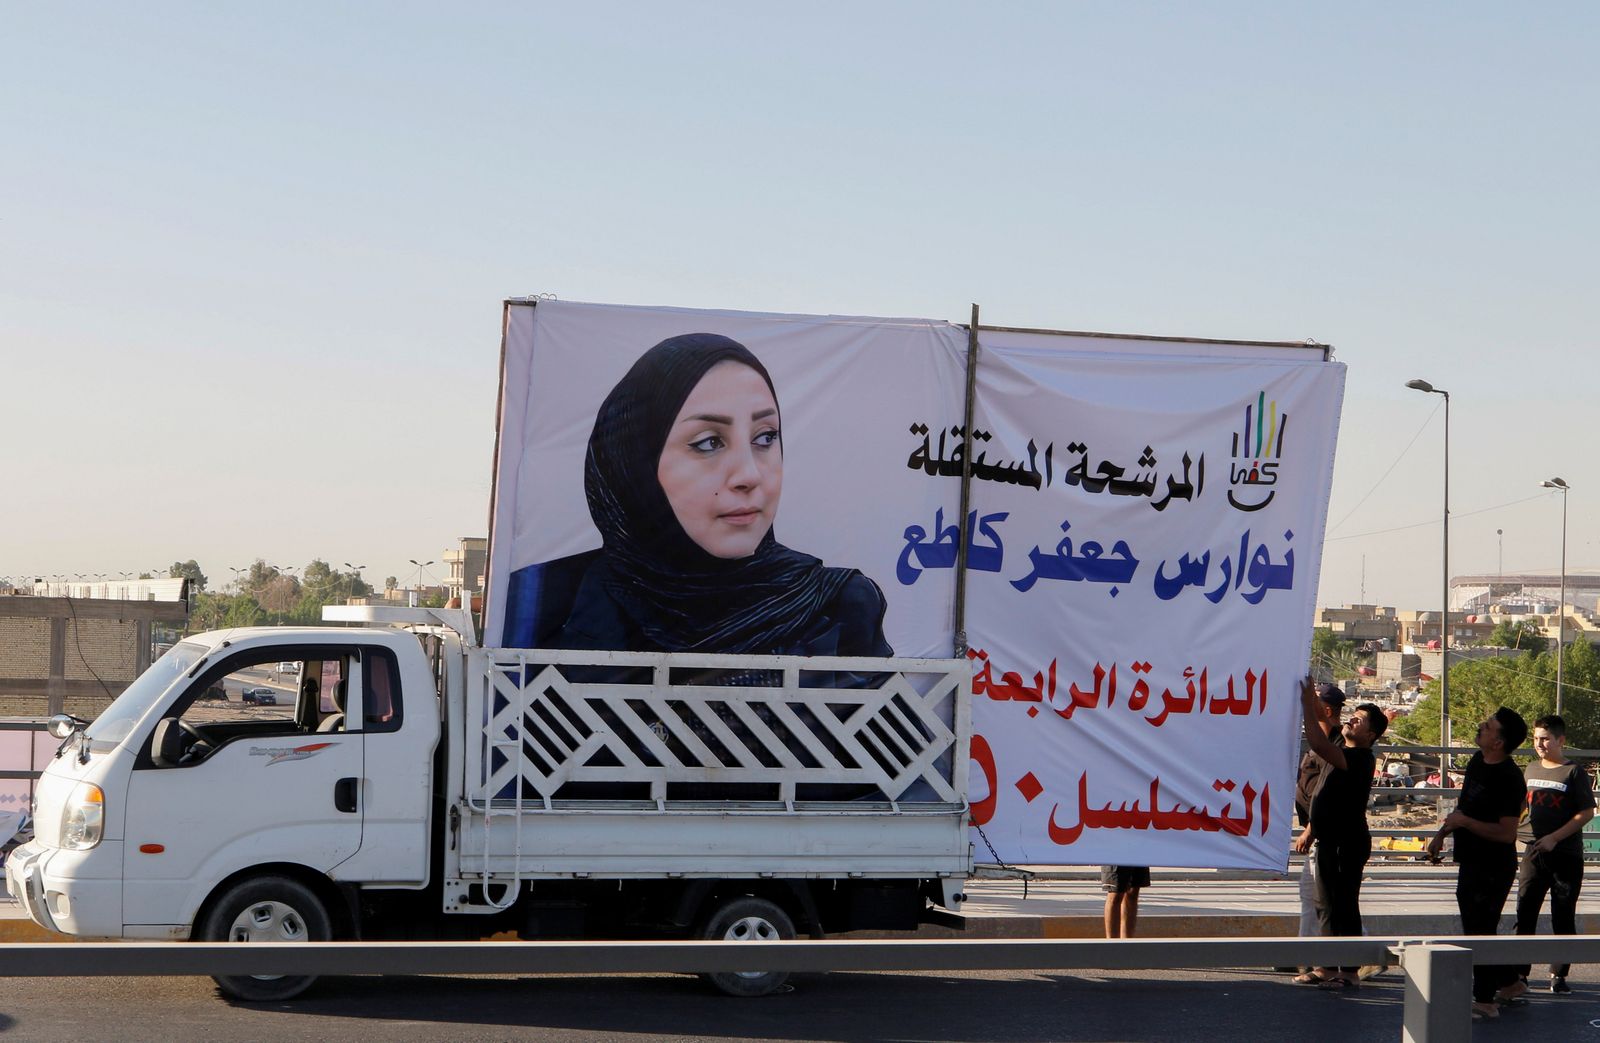 سيارة تحمل لوحة إعلانية لإحدى المرشحات للانتخابات العراقية التشريعية في بغداد- 27 سبتمبر 2021 - REUTERS